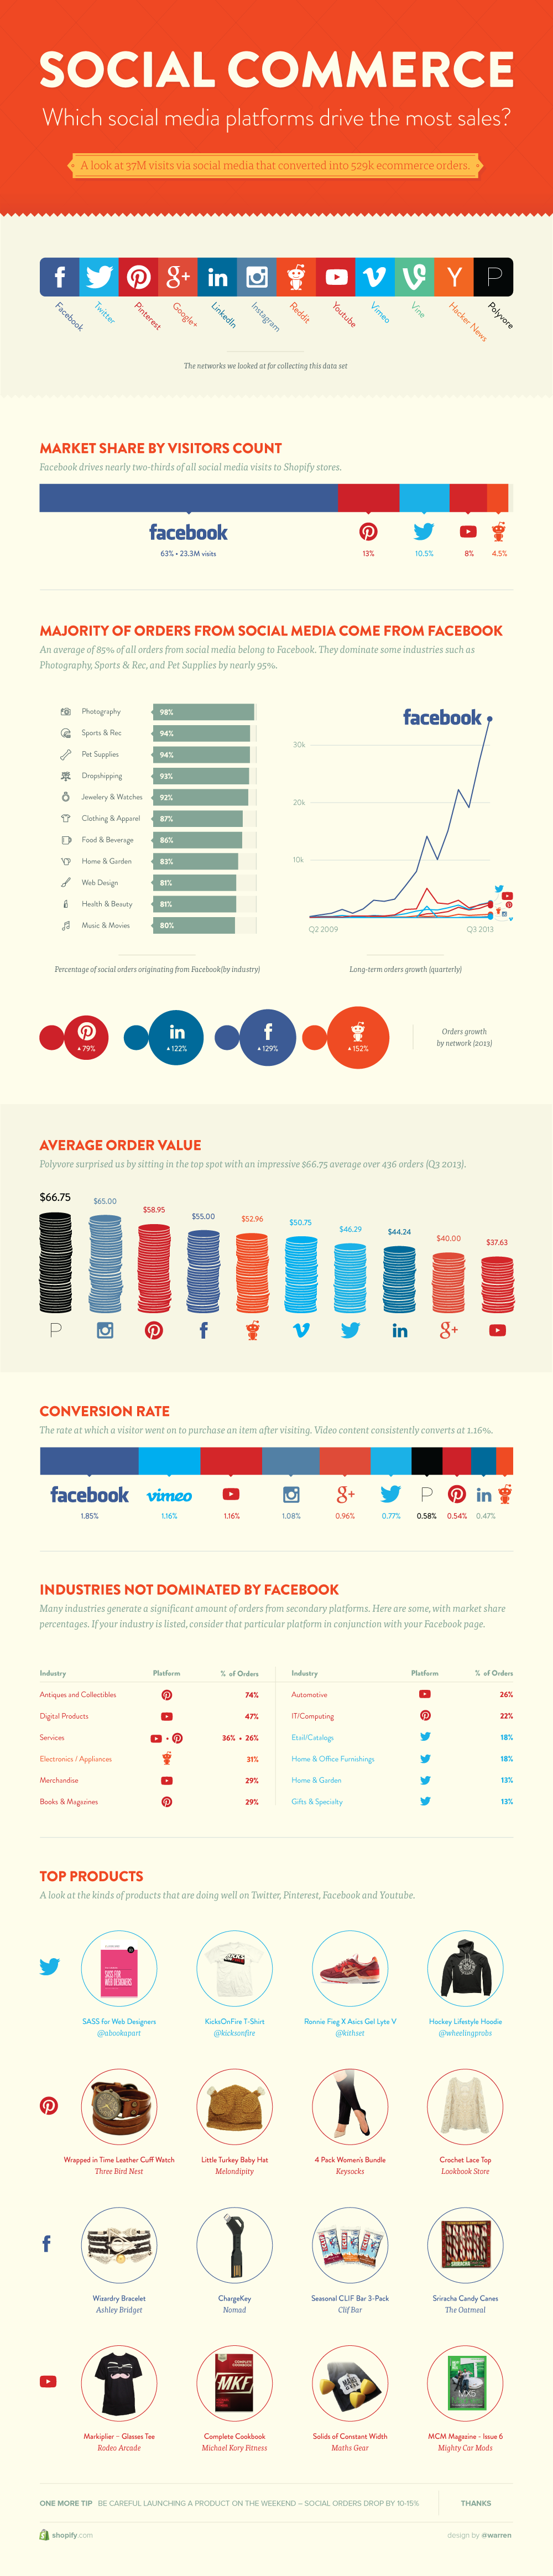 ¿En qué red social se vende más? - Infografía